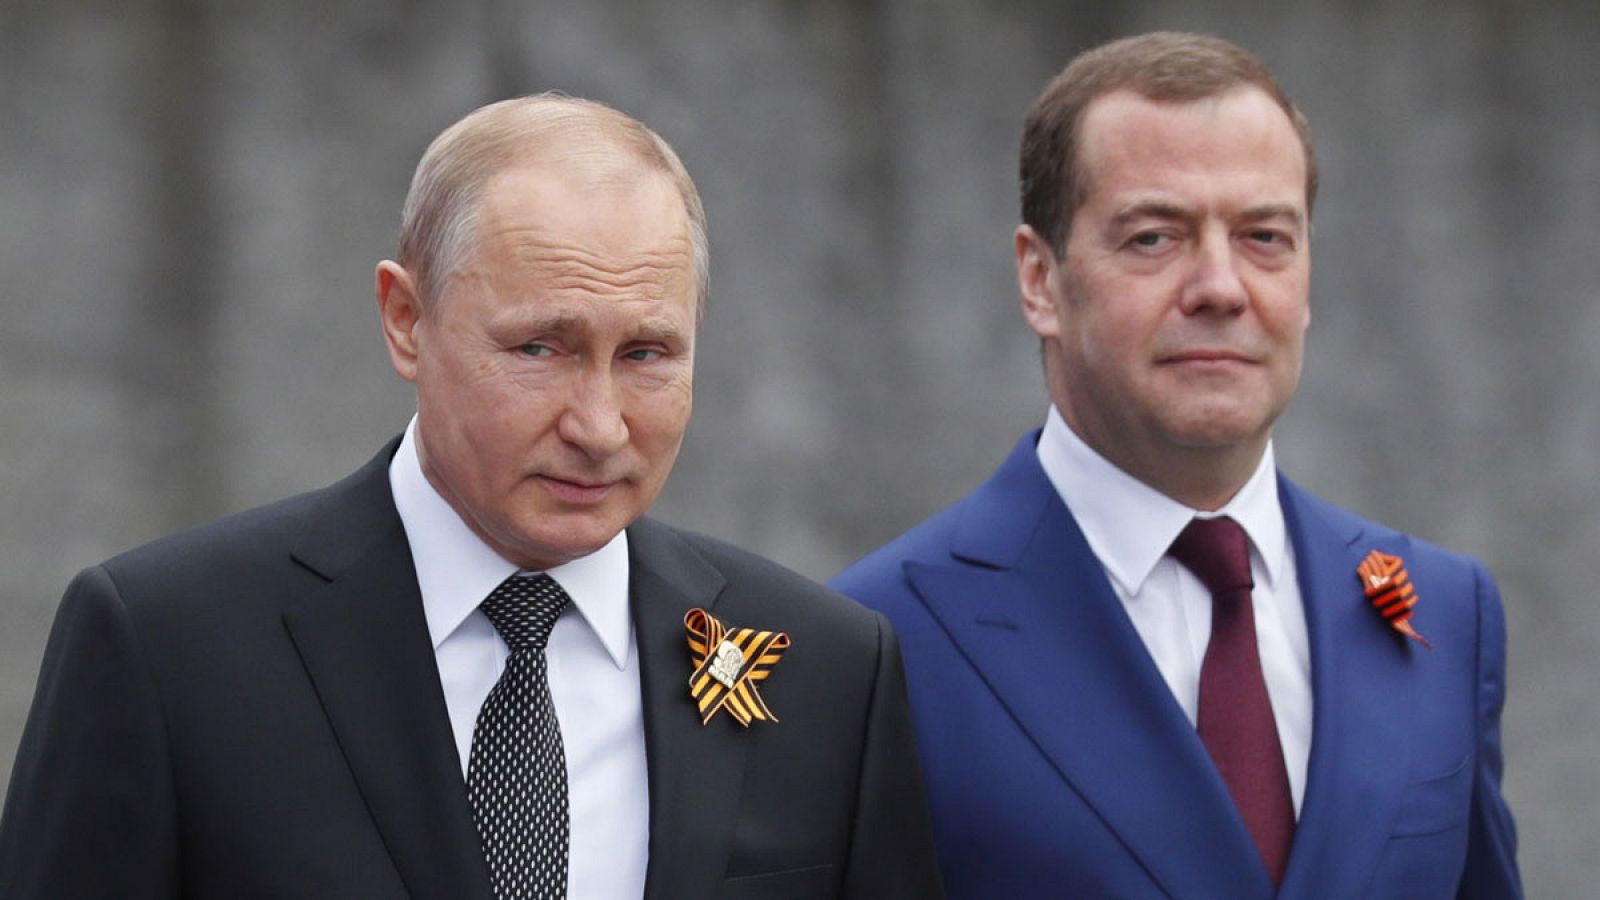 Putin provoca la dimisión del Gobierno ruso al anunciar reforma política